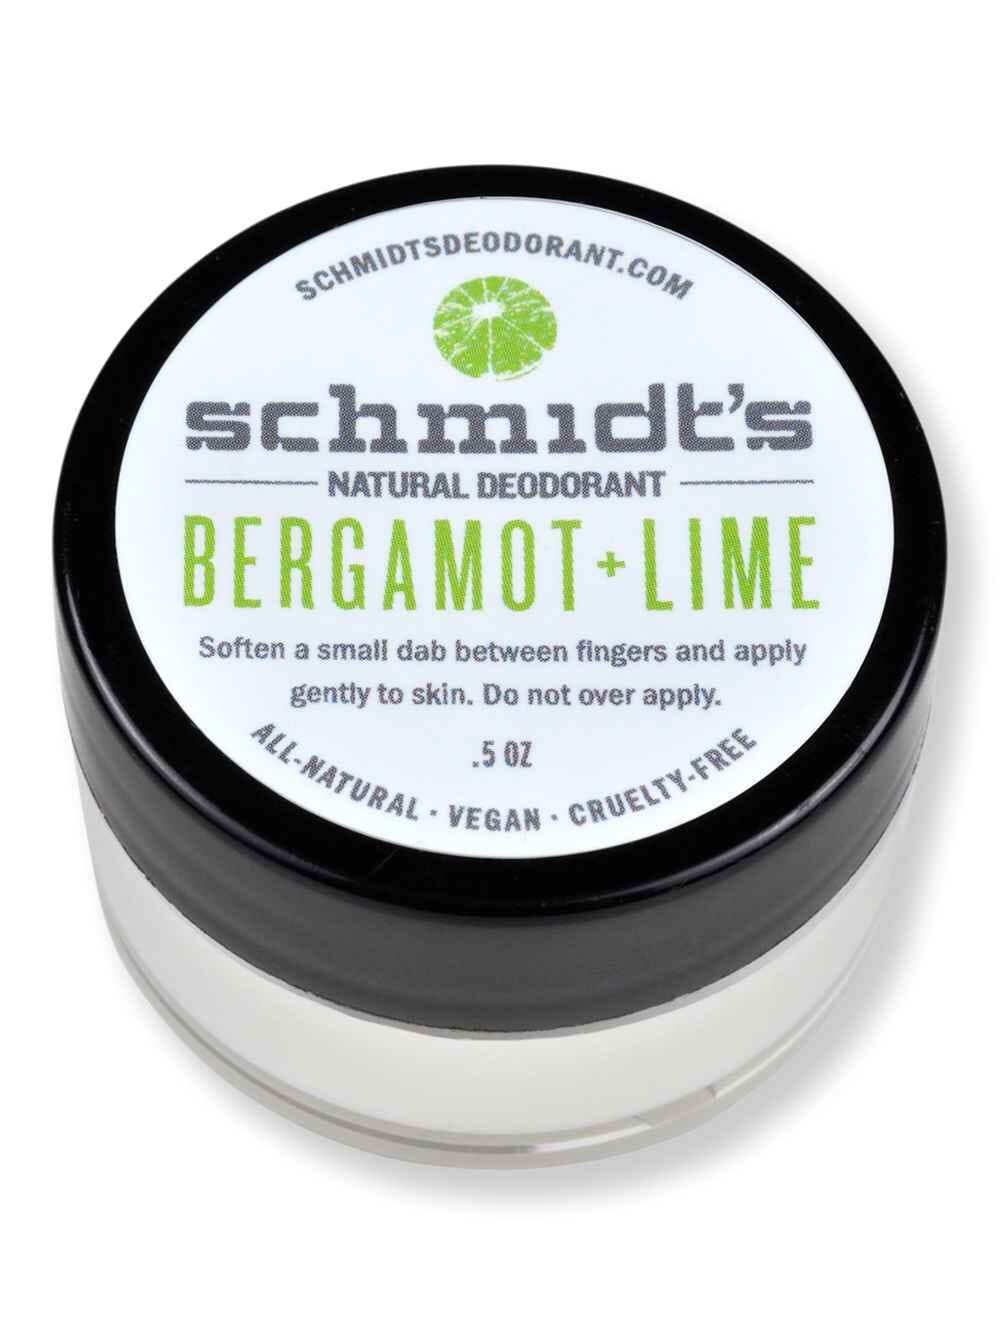 Schmidt's Deodorant Schmidt's Deodorant Bergamot + Lime Deodorant Jar 0.5 oz Antiperspirants & Deodorants 